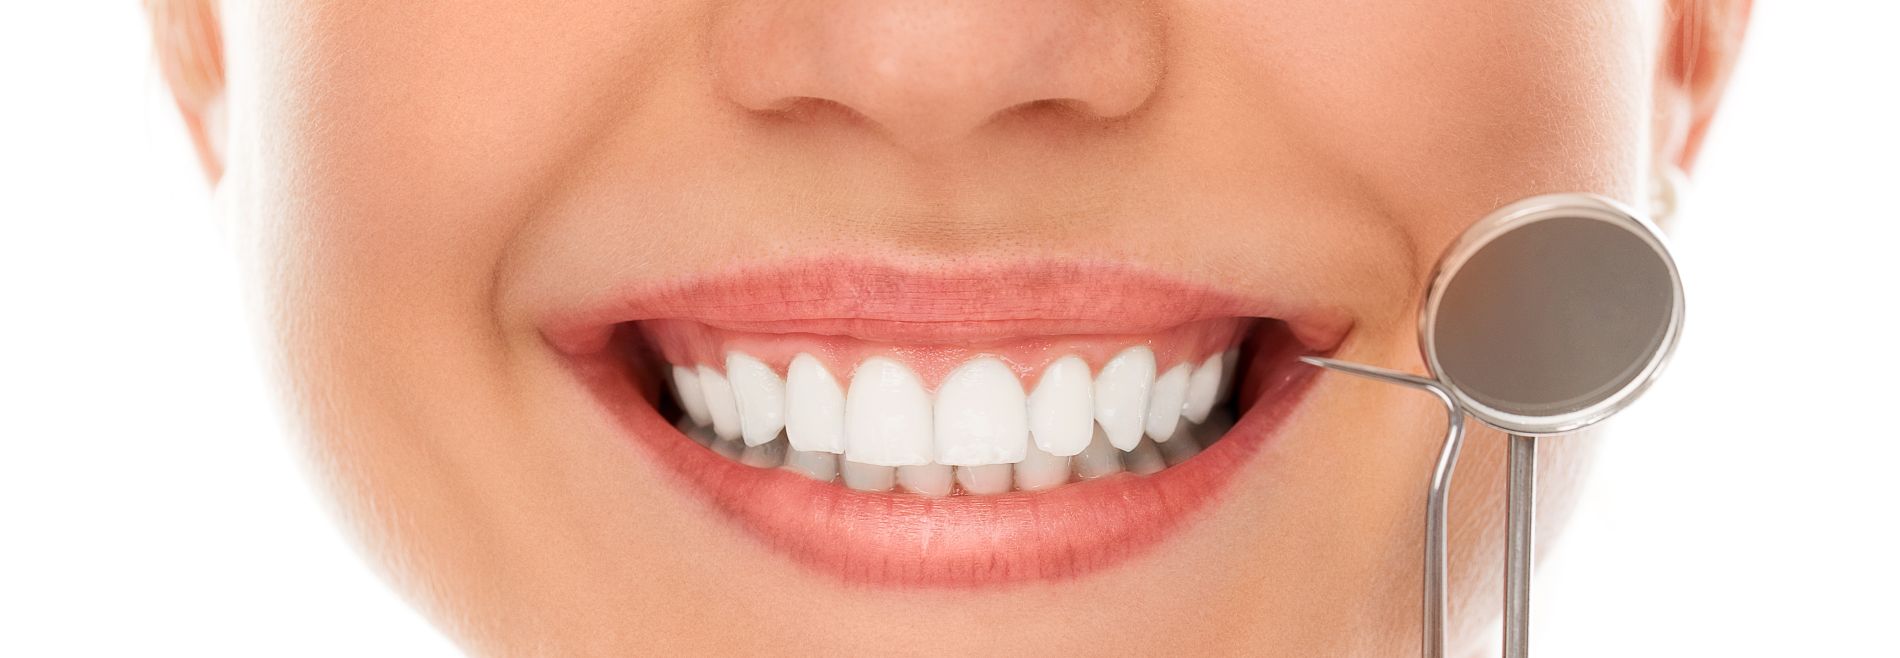 Diseño de sonrisa Clinica Dental Oralvant Ibague Colombia